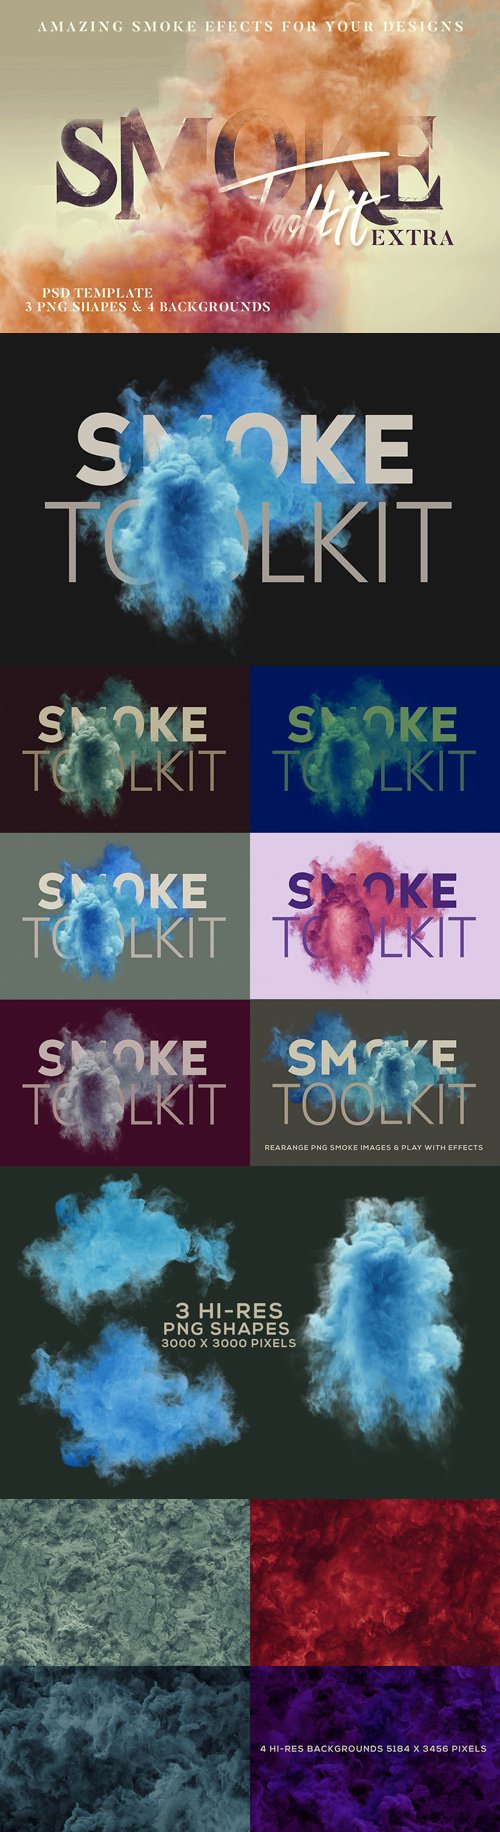 Amazing Smoke Effects PSD Templates